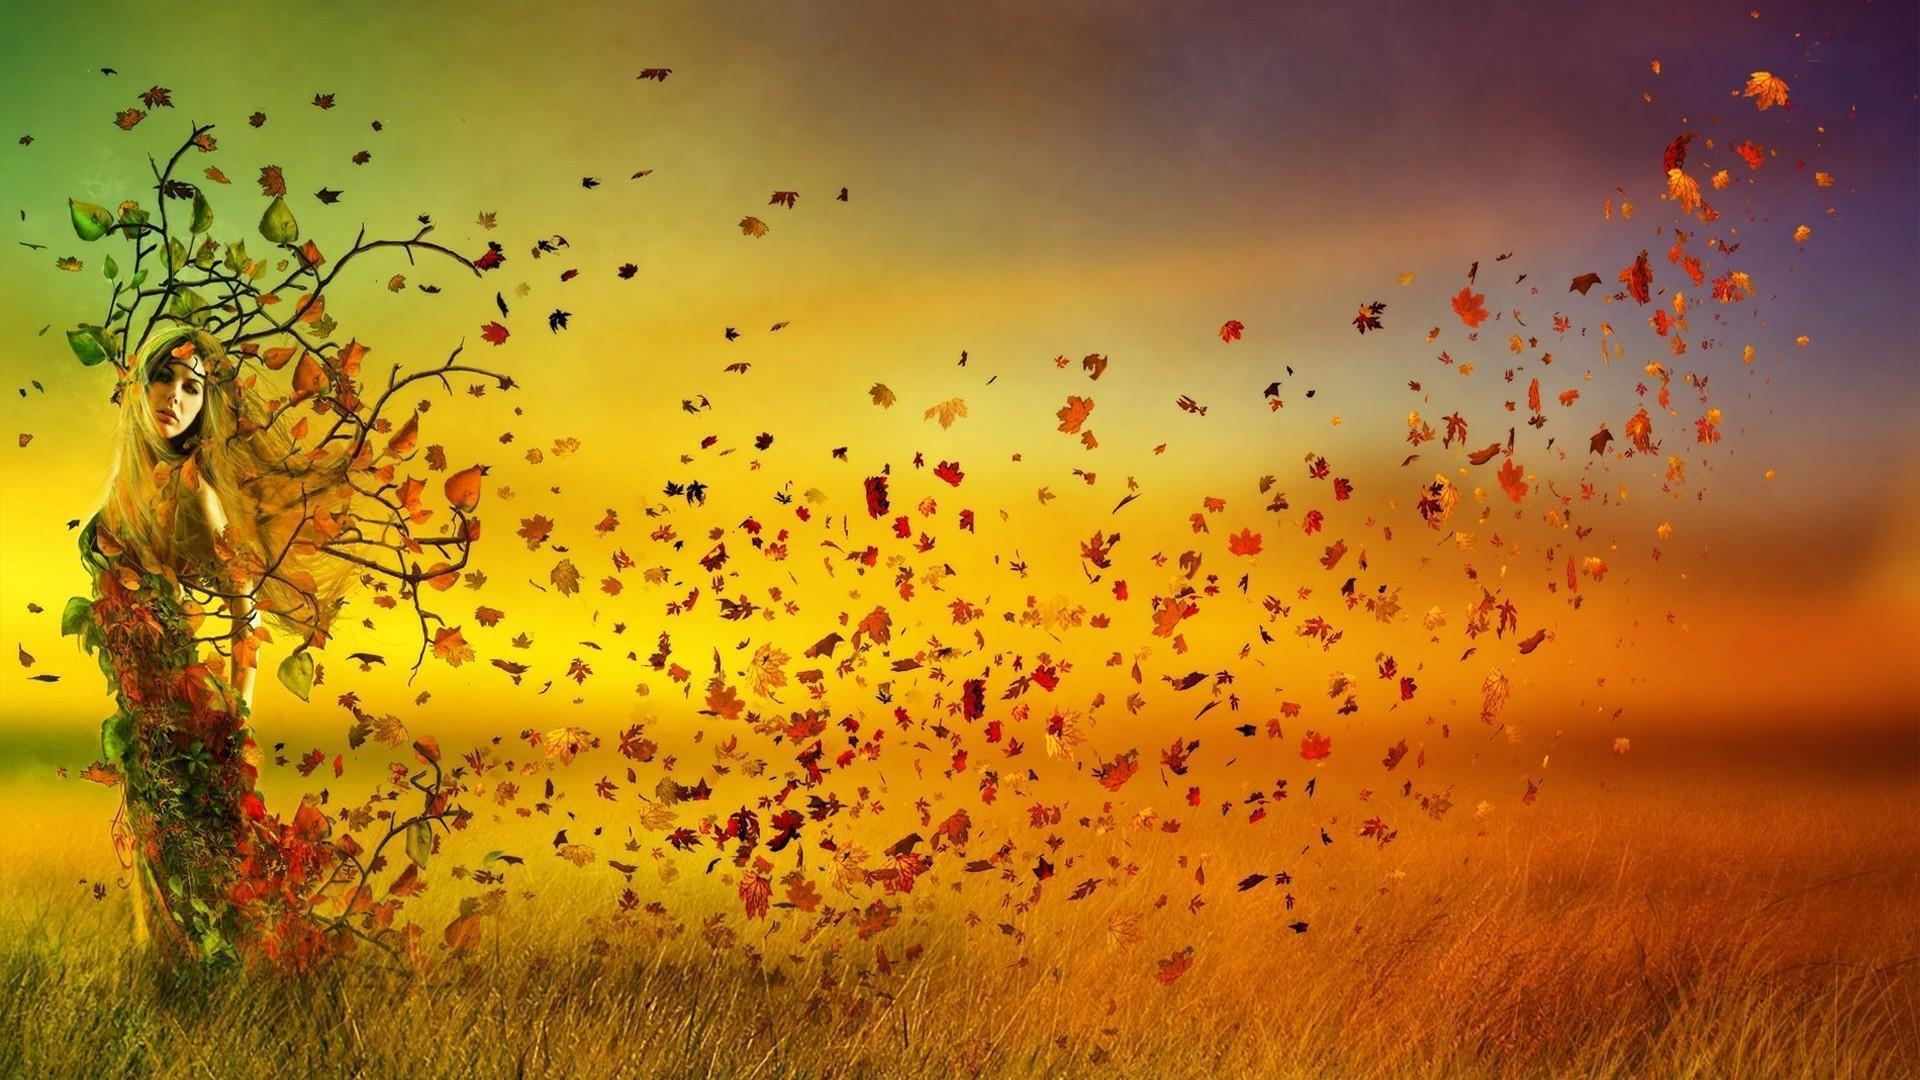 Autumn Sunset HD desktop wallpaper, Widescreen, High